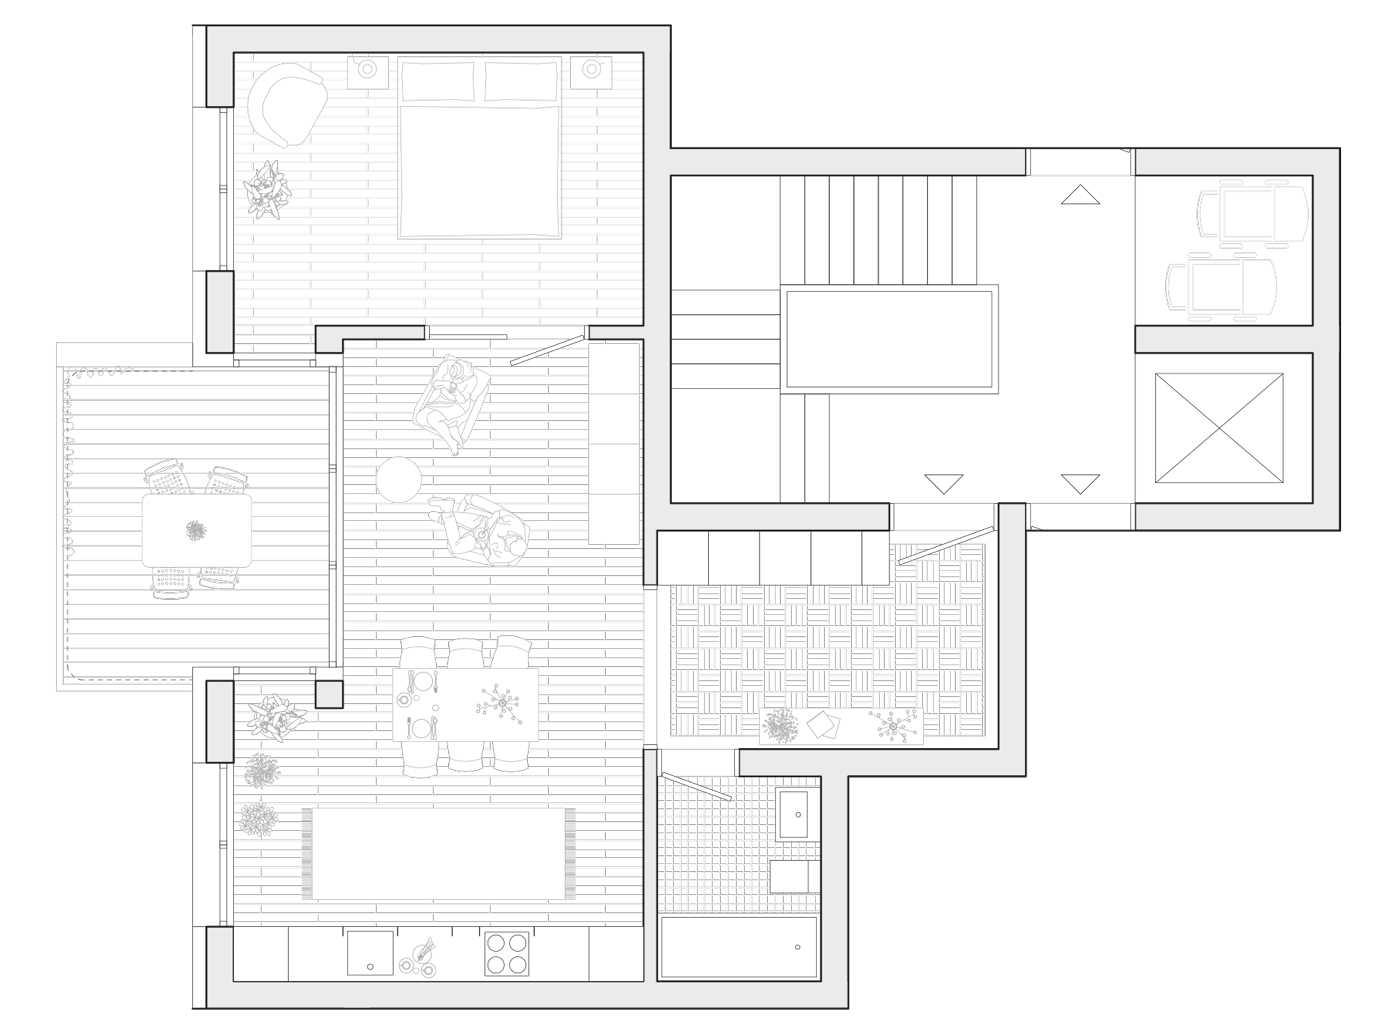 buan architekten – Studienauftrag Meierhöfli Metti – Wohnungsgrundriss 2.5-Zimmer